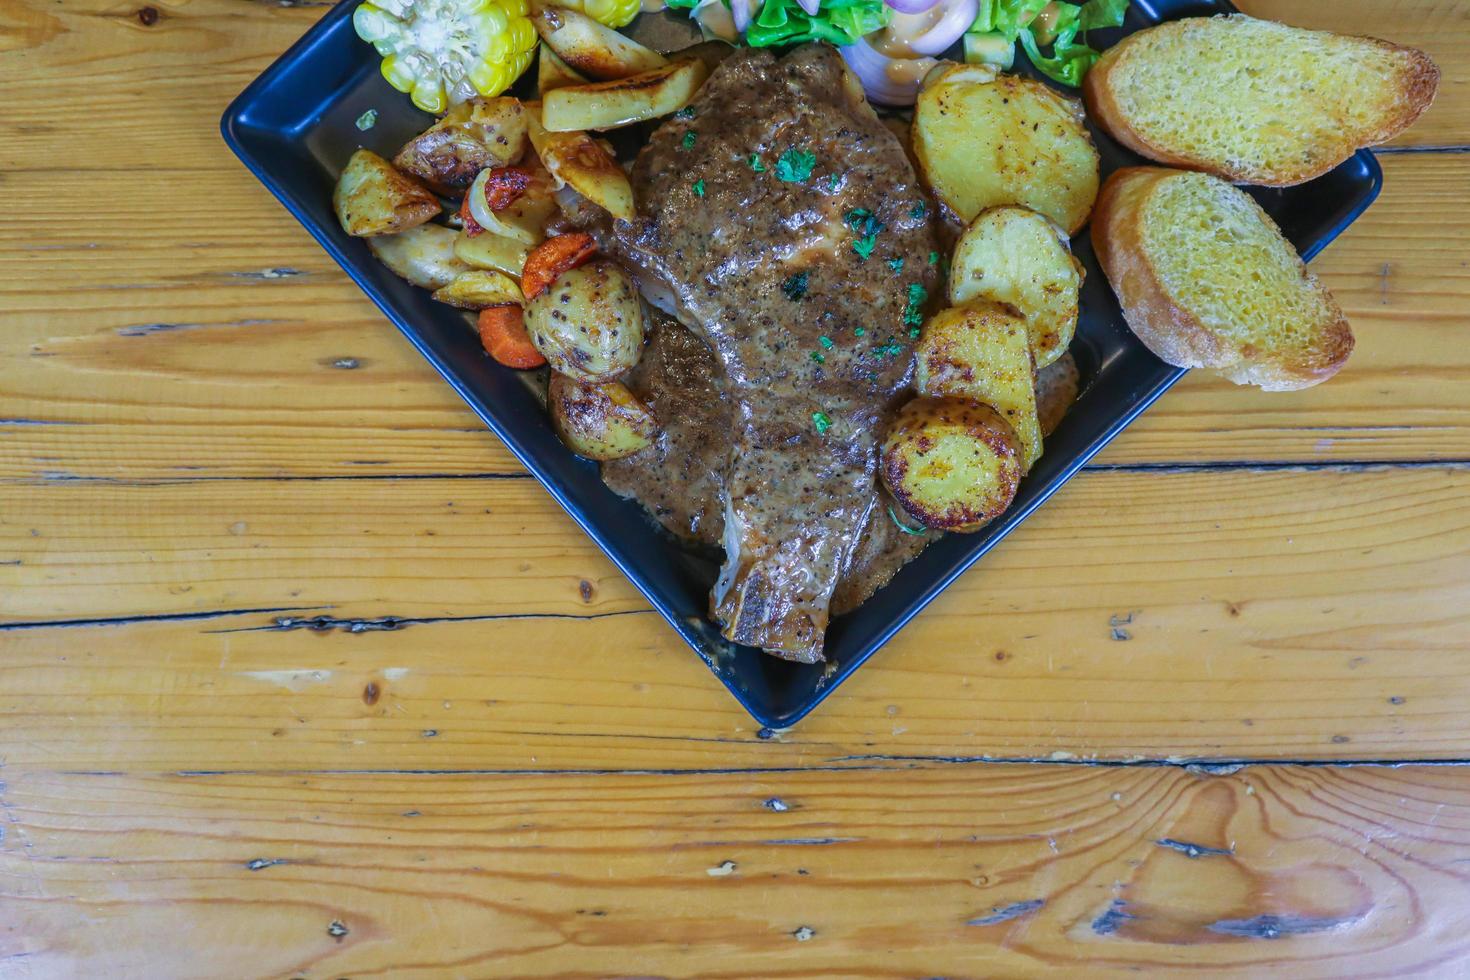 le steak de boeuf grillé avec sauce est servi avec une salade de fruits et légumes à l'intérieur d'une assiette en céramique noire sur la table de la salle à manger pour préparer le steak pour un dîner de fête. photo